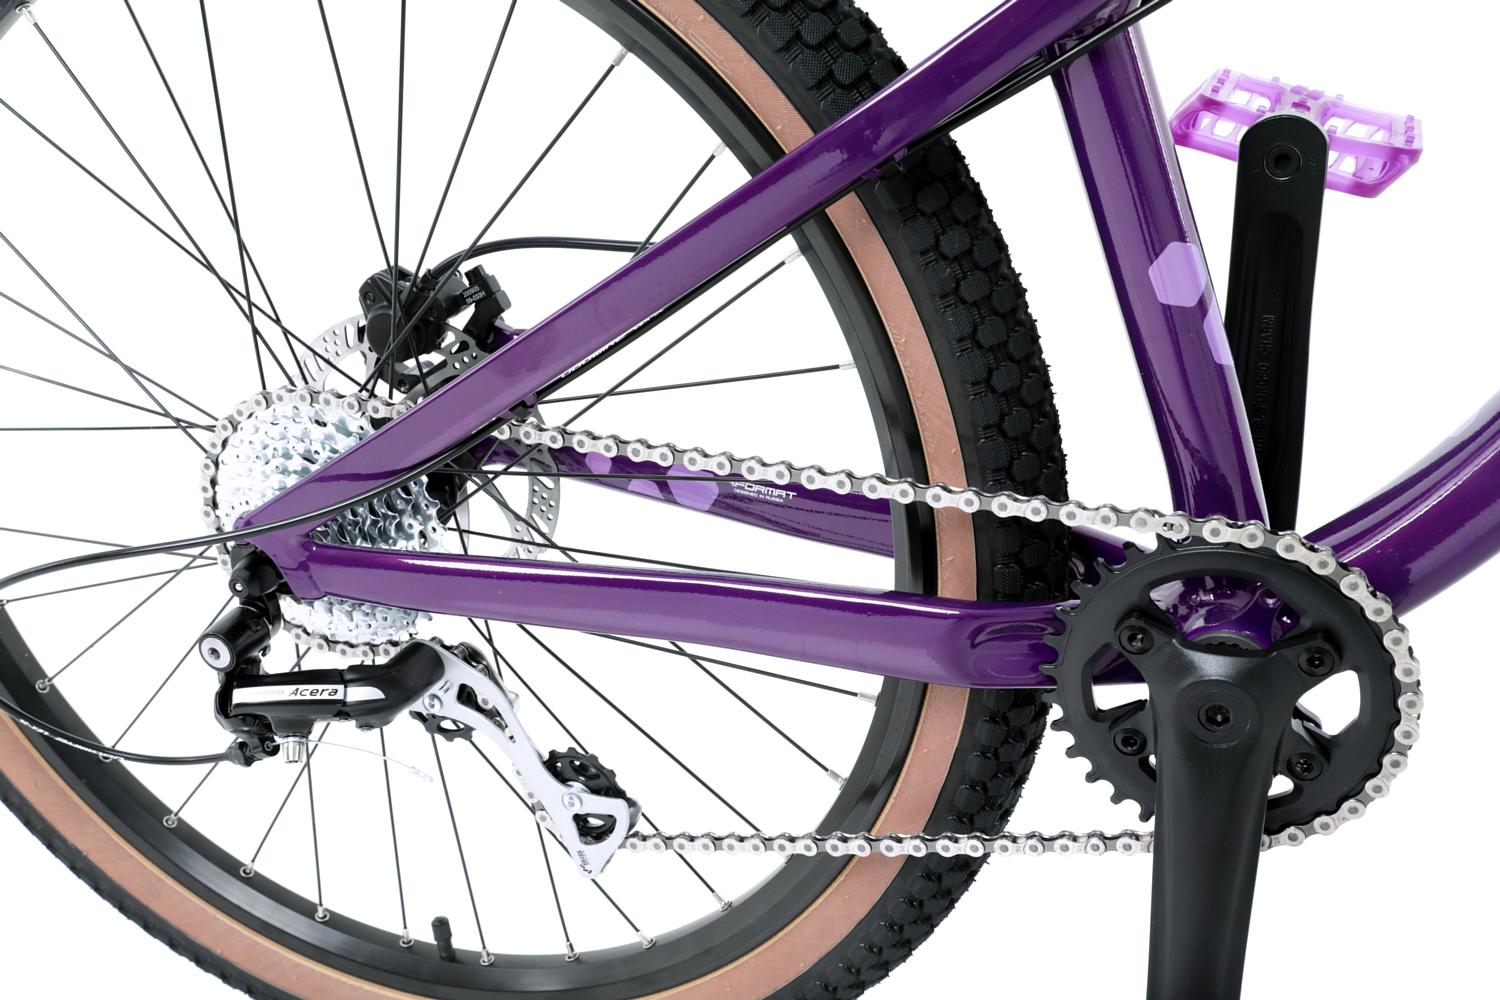 Велосипед Format 9213 26 2021 фиолетовый